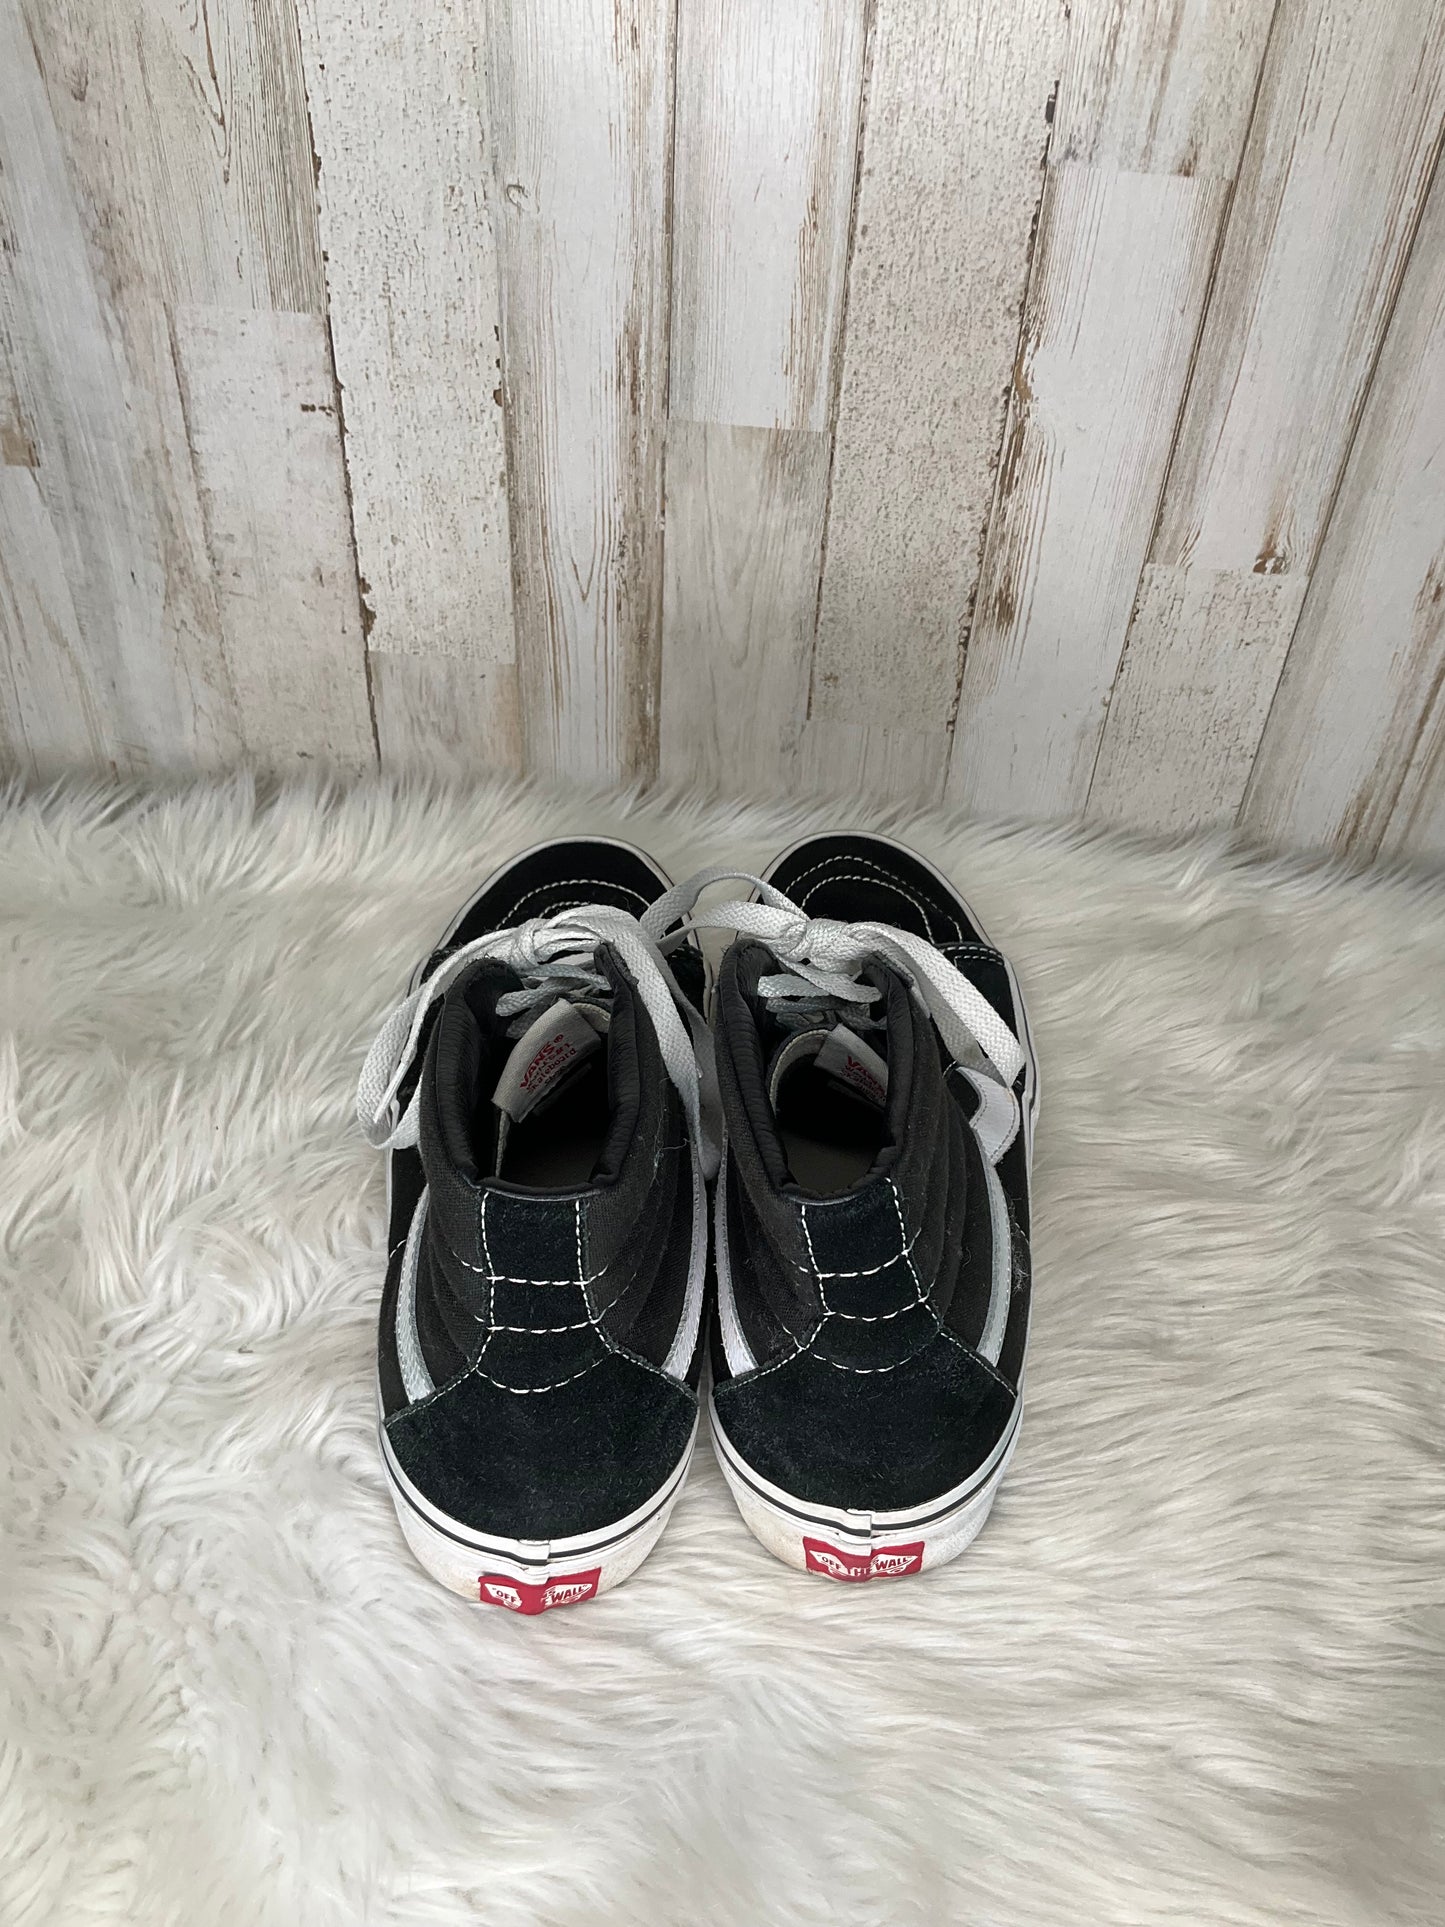 Black Shoes Sneakers Vans, Size 9.5